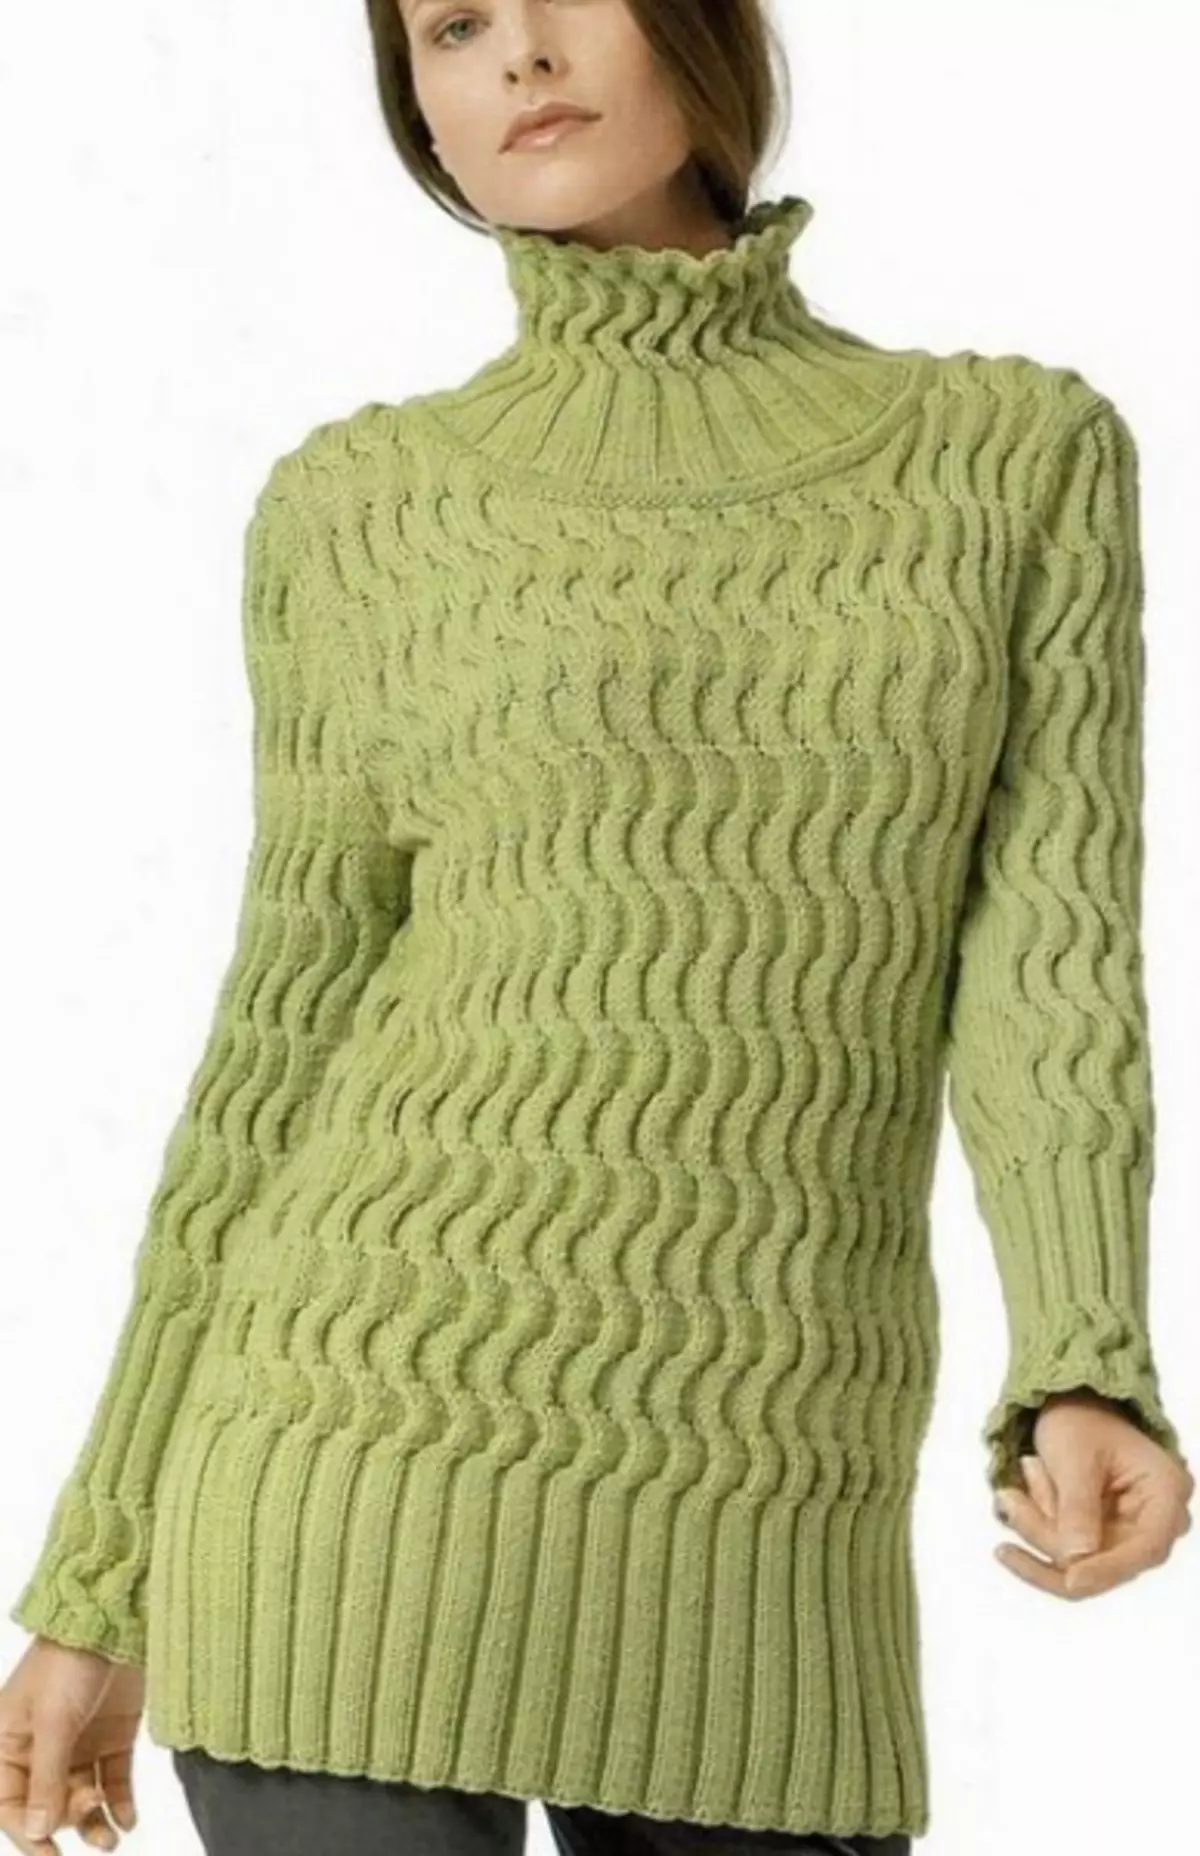 Mace Sweater saƙa tare da zane: Yadda za a saƙa tare da hotuna da bidiyo